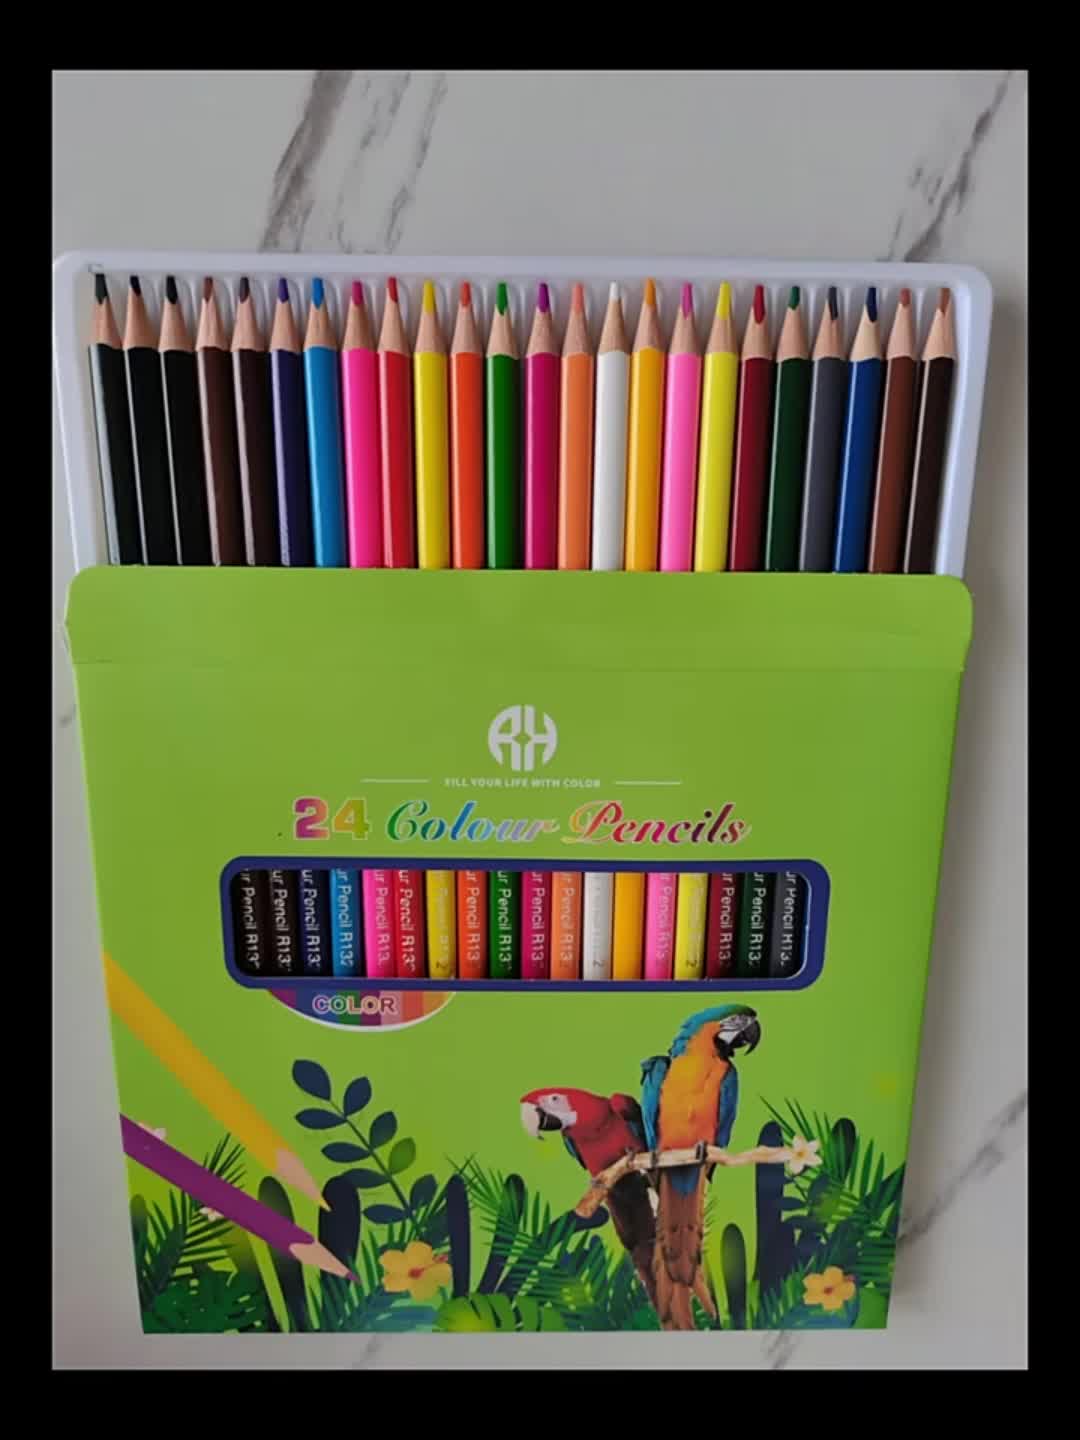 MindWare Lápices de colores para niños y adultos, ideales como lápices de  dibujo o suministros para el aula, juego de 36 lápices de colores en un